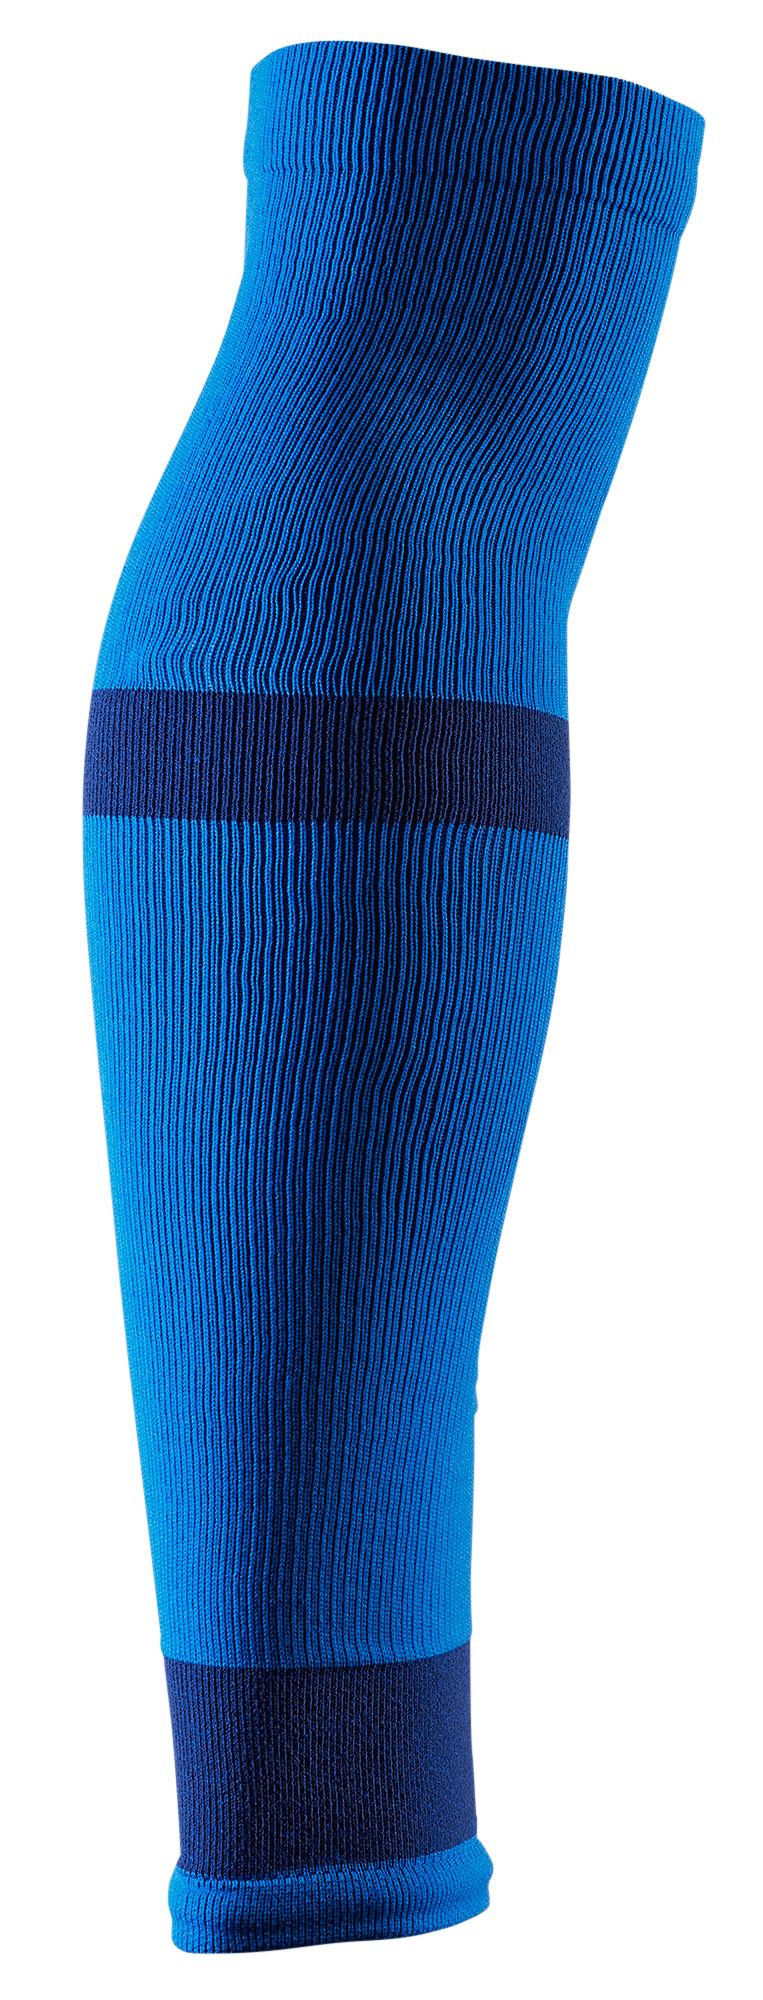 DSG Adult Soccer Leg Sleeve – 2 Pack